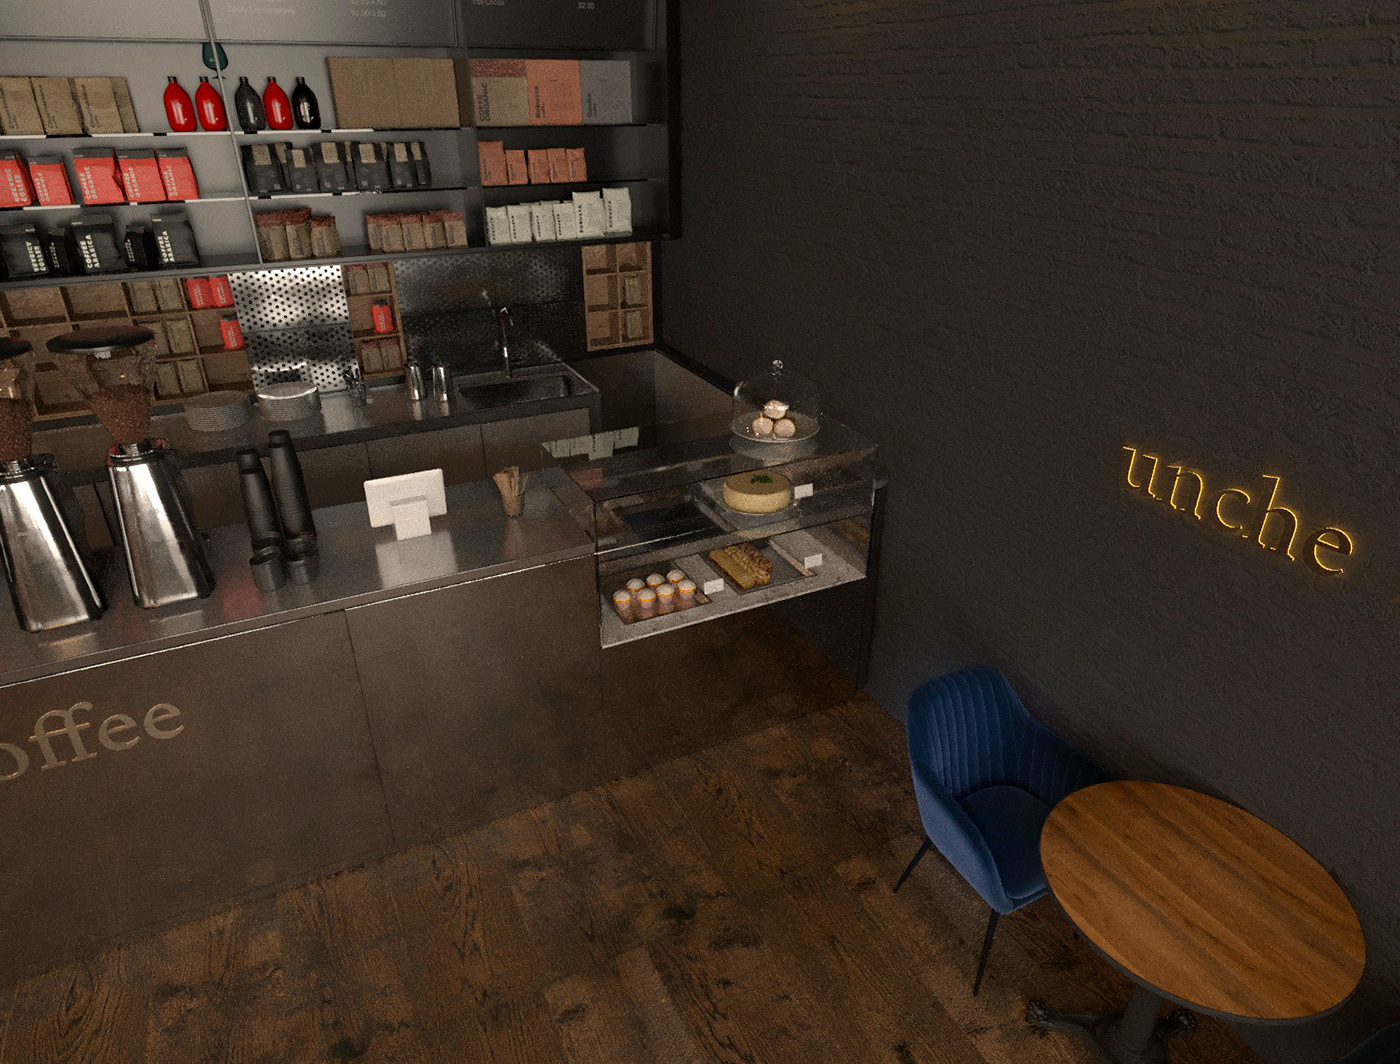 coffee shop interior design  LOFT prague Project restaurant Render visualization